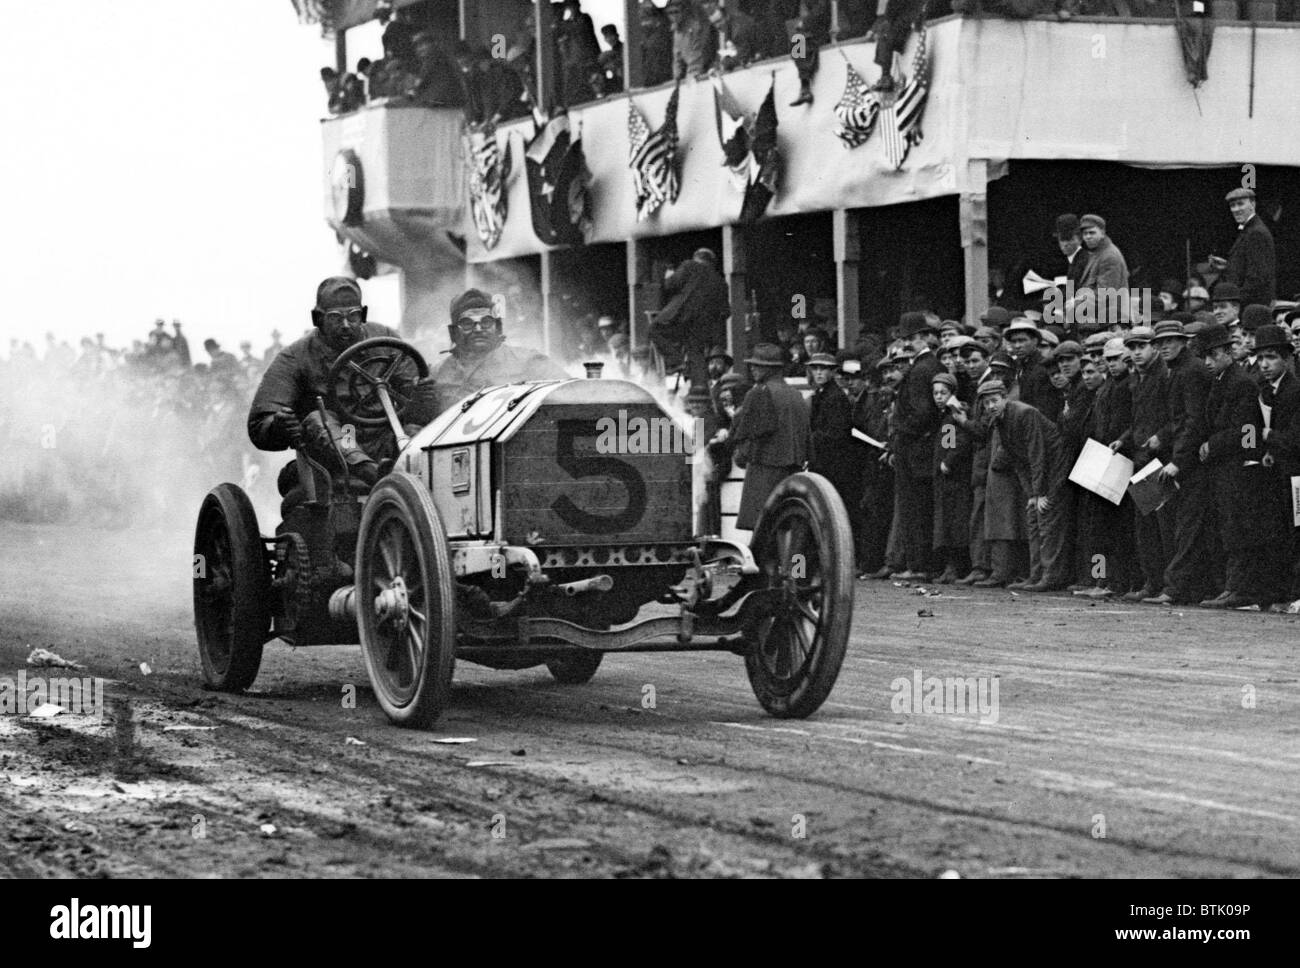 Racing. Vanderbilt Cup Auto Race, W.K. Vanderbilt Jr.'s "Mercedes" on track. Oct 24, 1908 Stock Photo